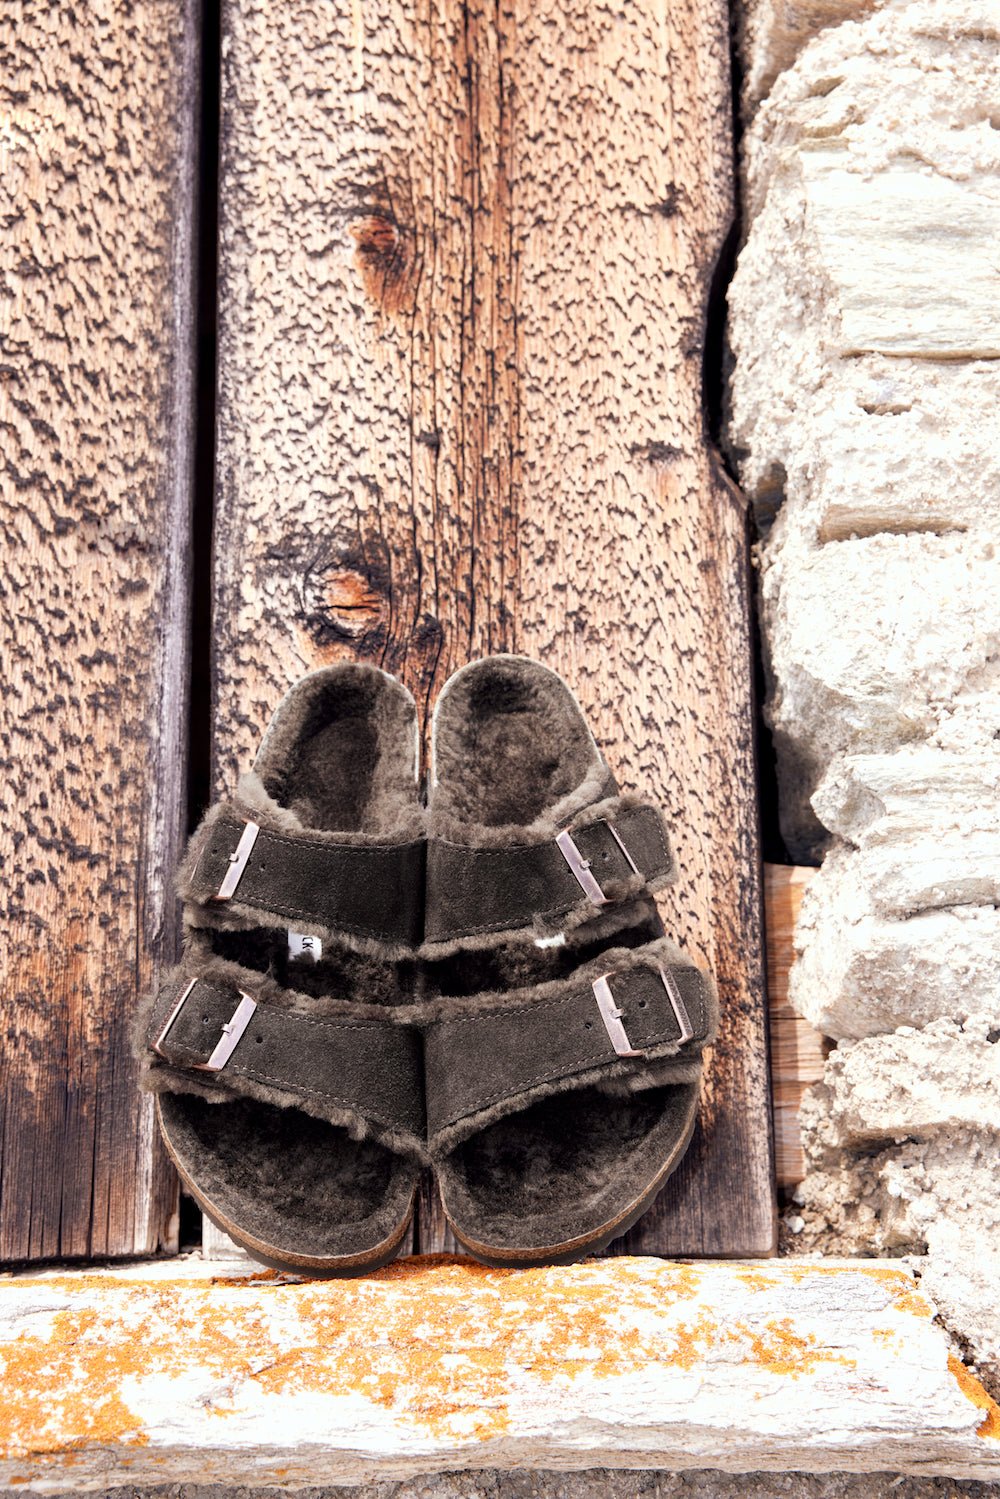 Birkenstock Arizona Sandals in Mocha Suede